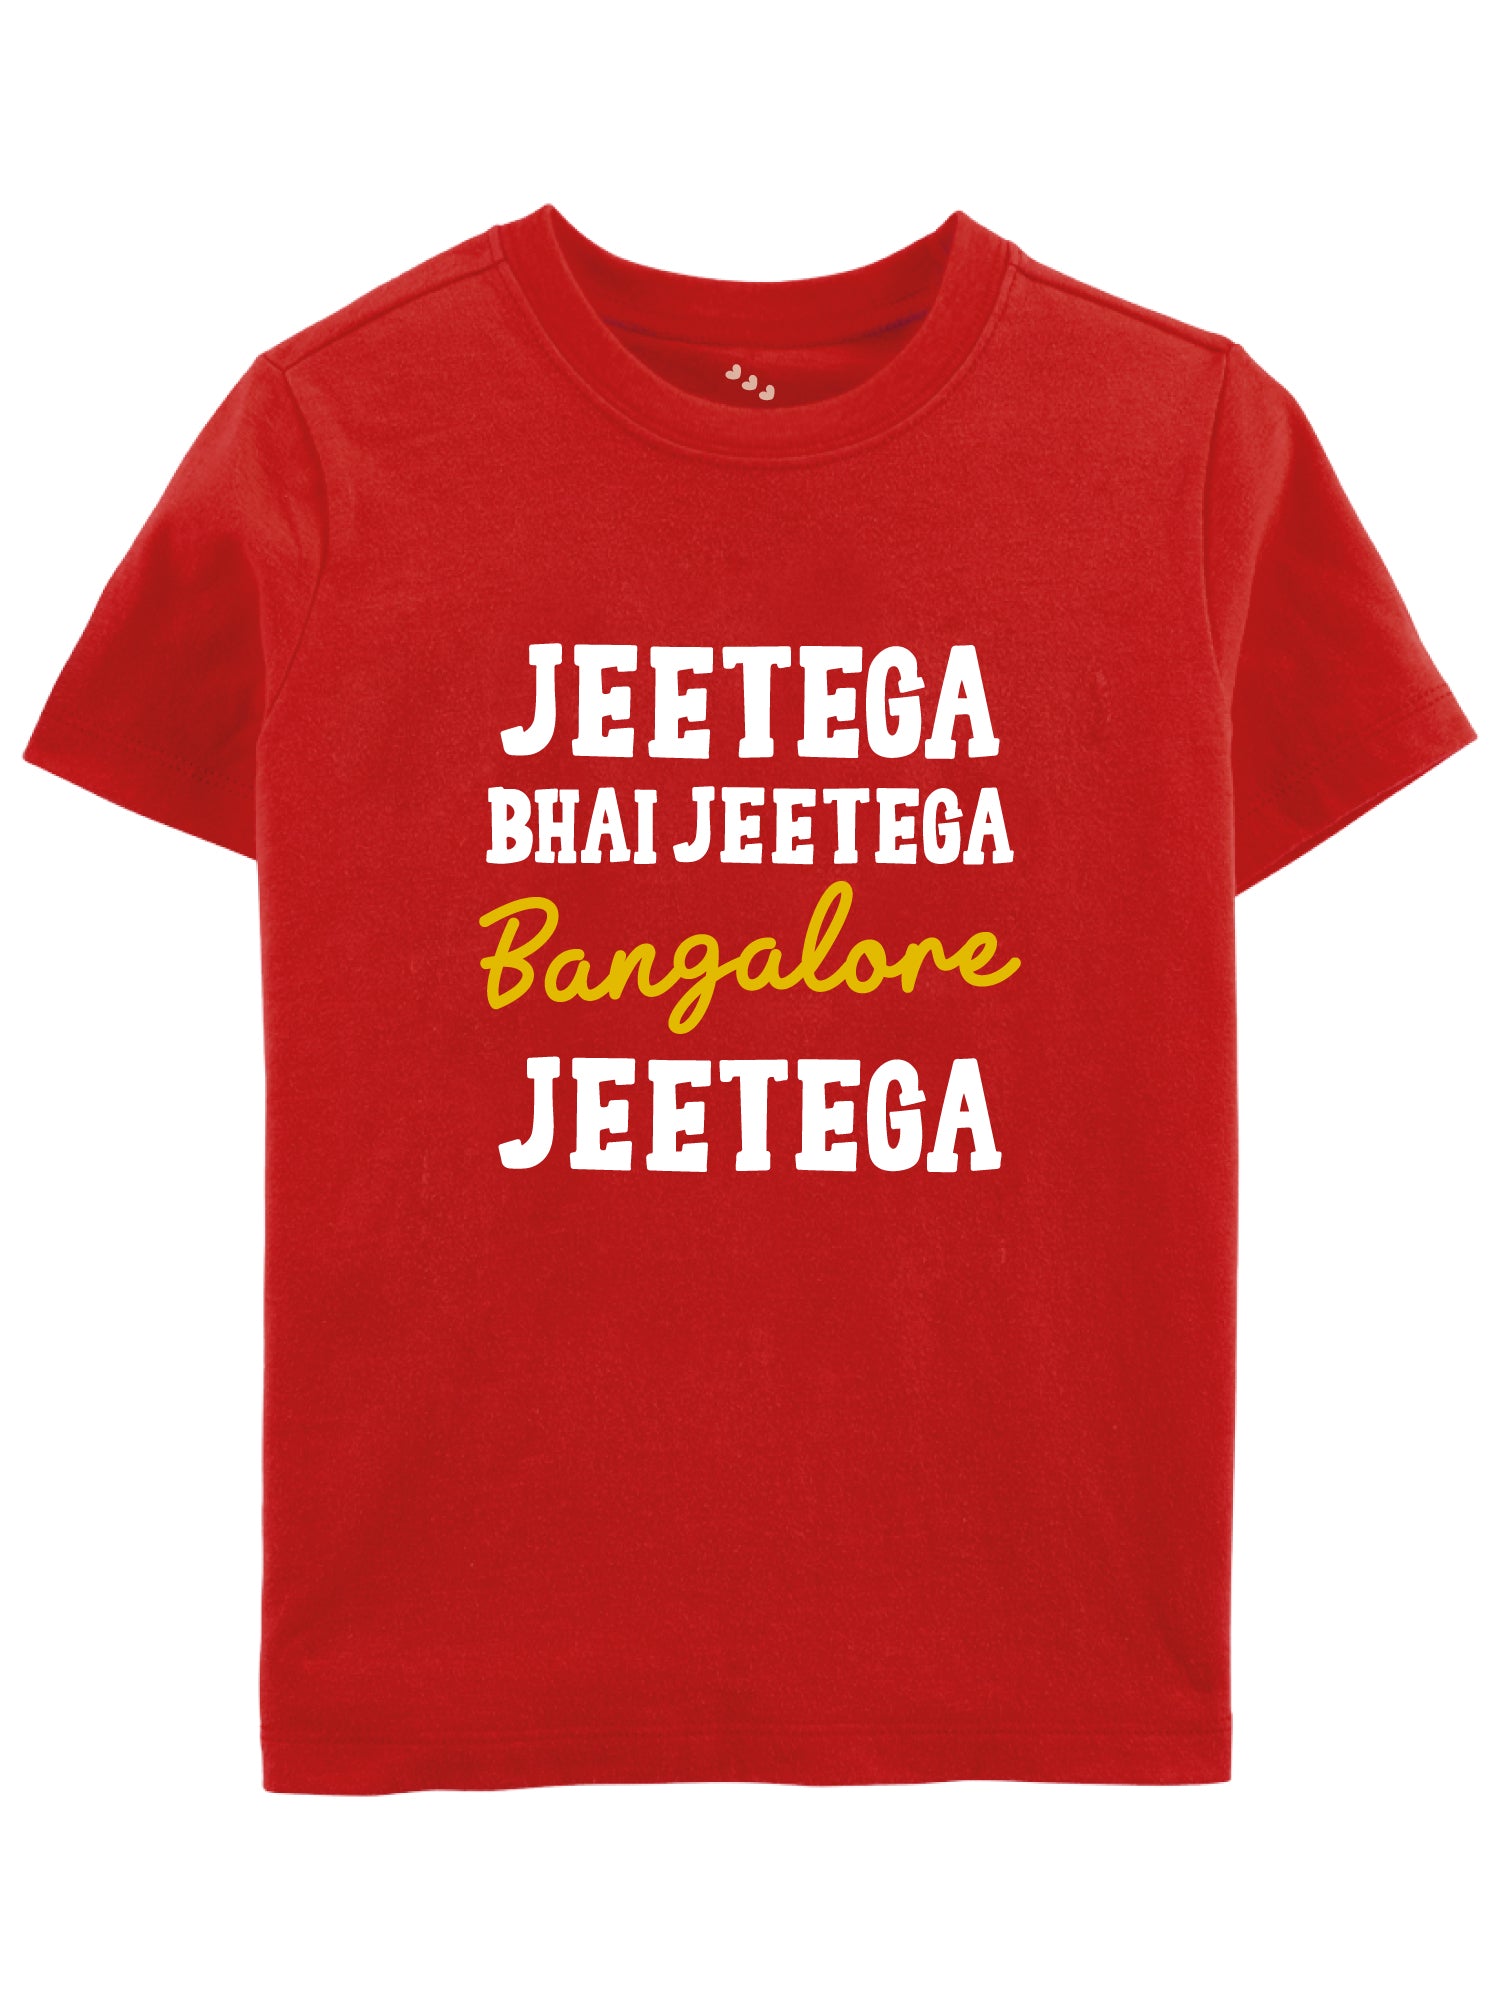 Jeetega Bhai Jeetega Bangalore Jeetega - Tee